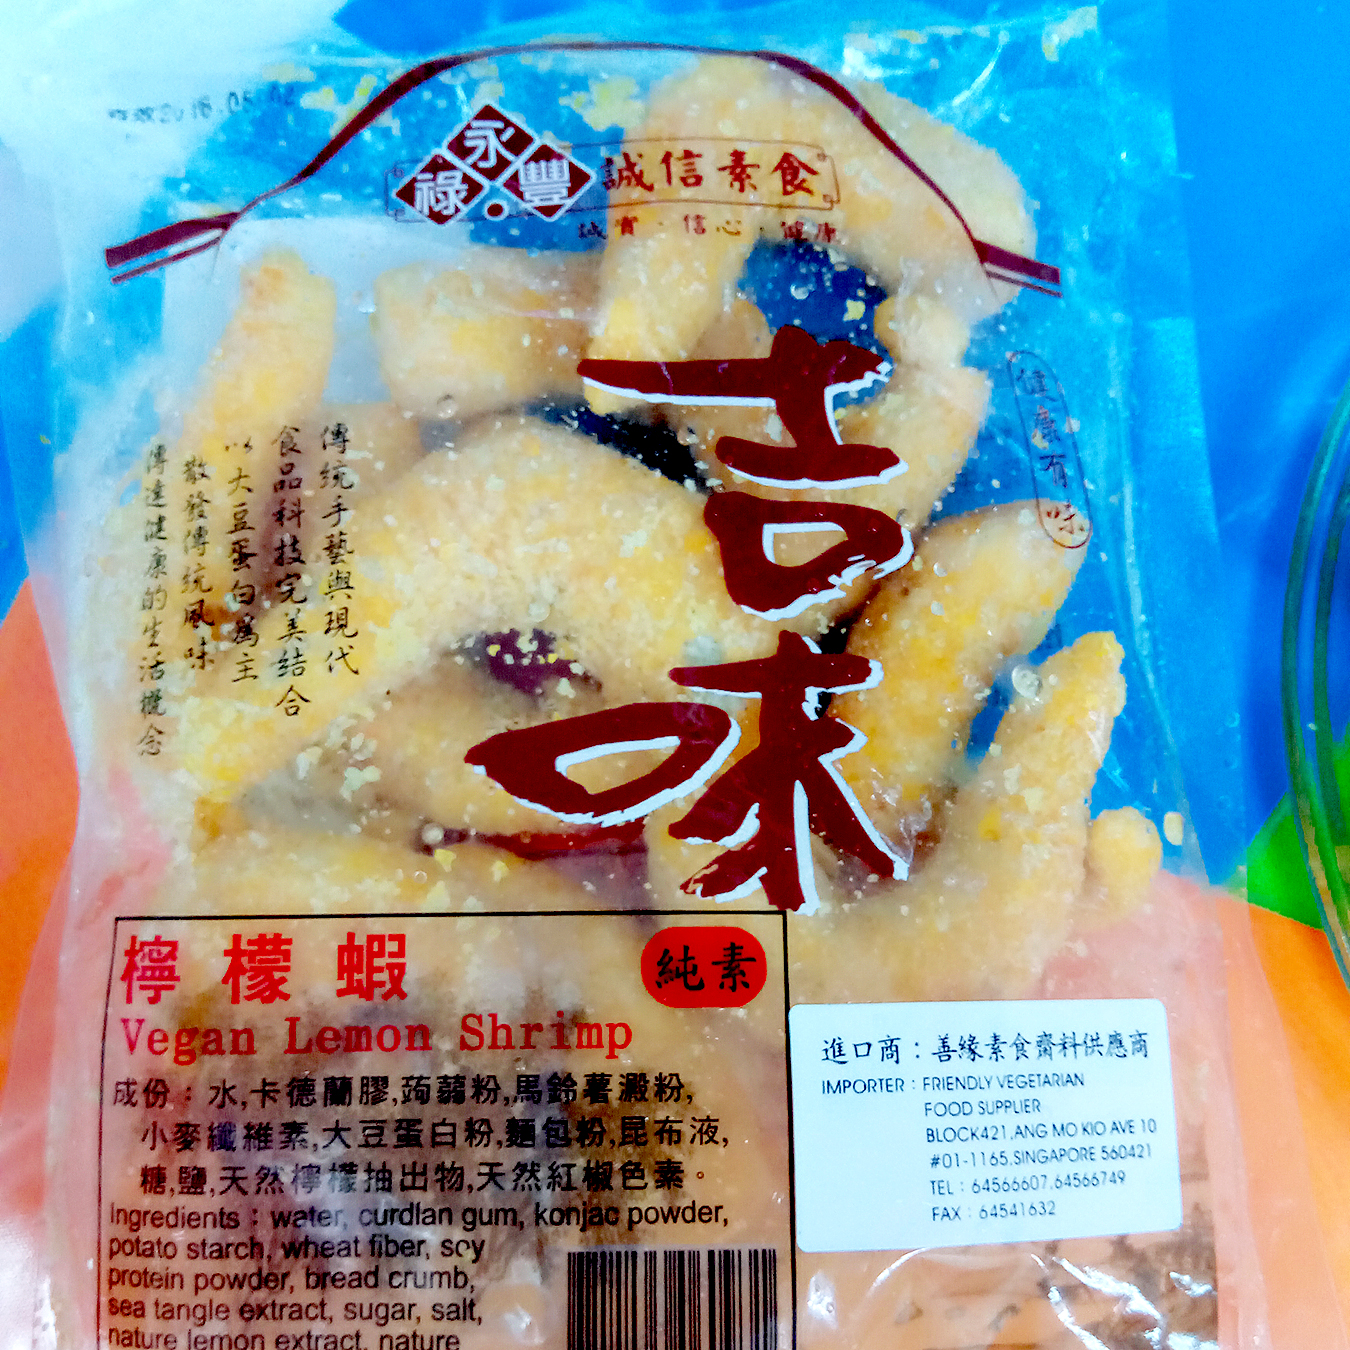 Image Vegan Lemon Shrimp 诚信 - 柠檬虾 500grams